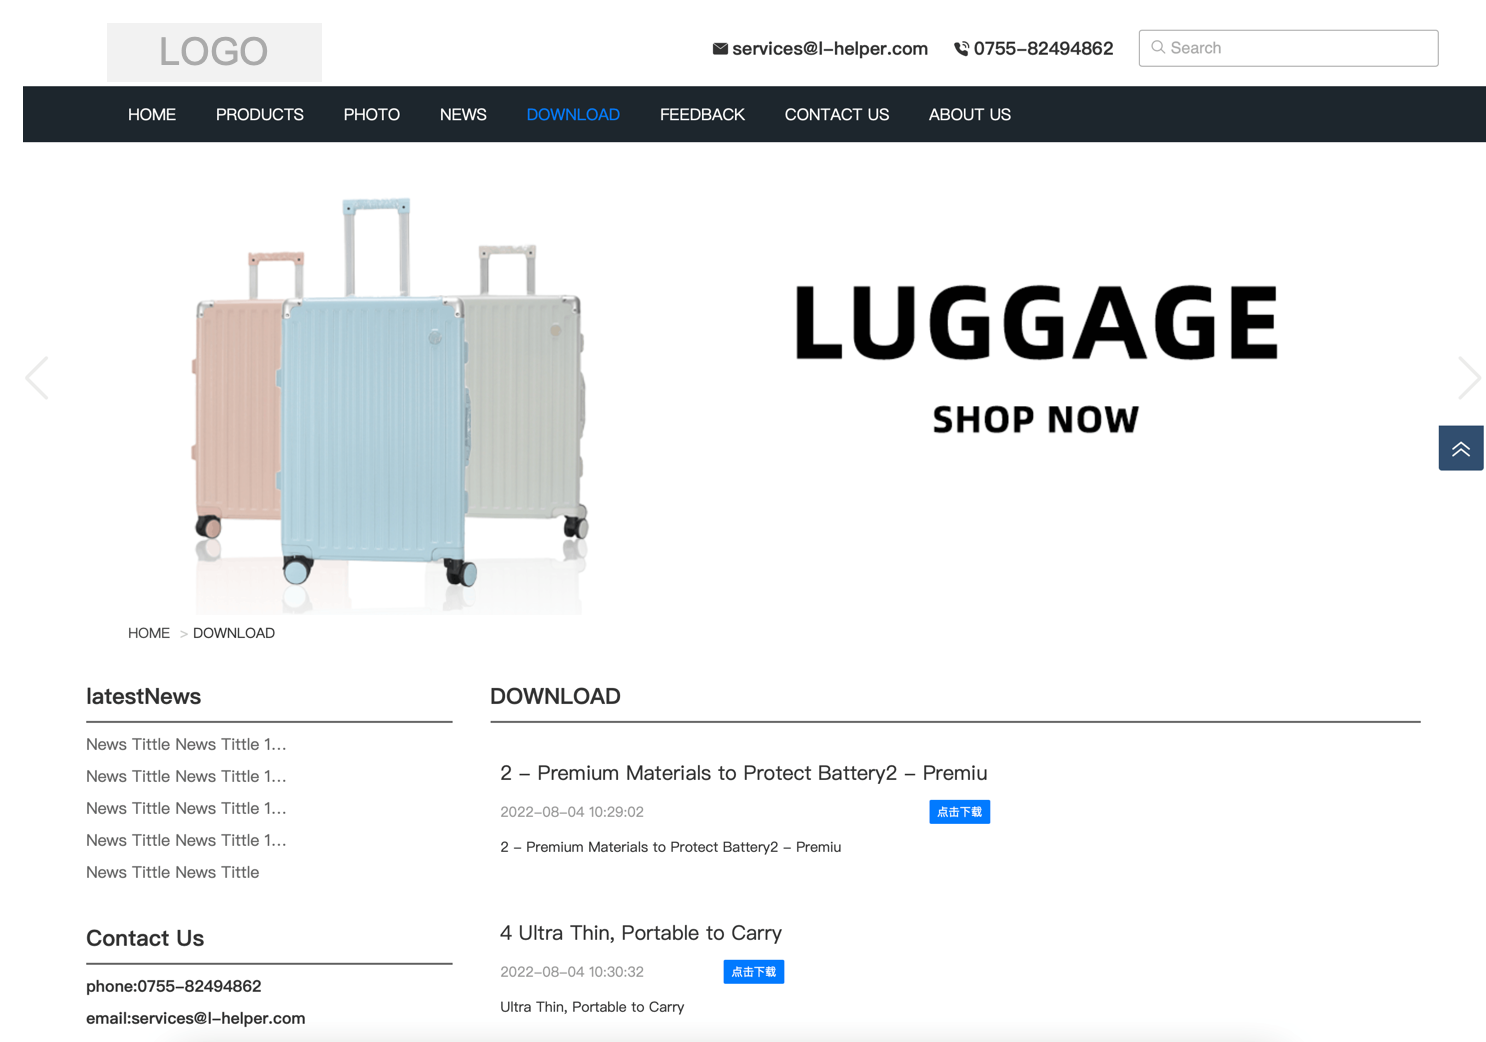 模板演示_SEO增强版_PK01 行李箱包、手提包、背包、挂包等